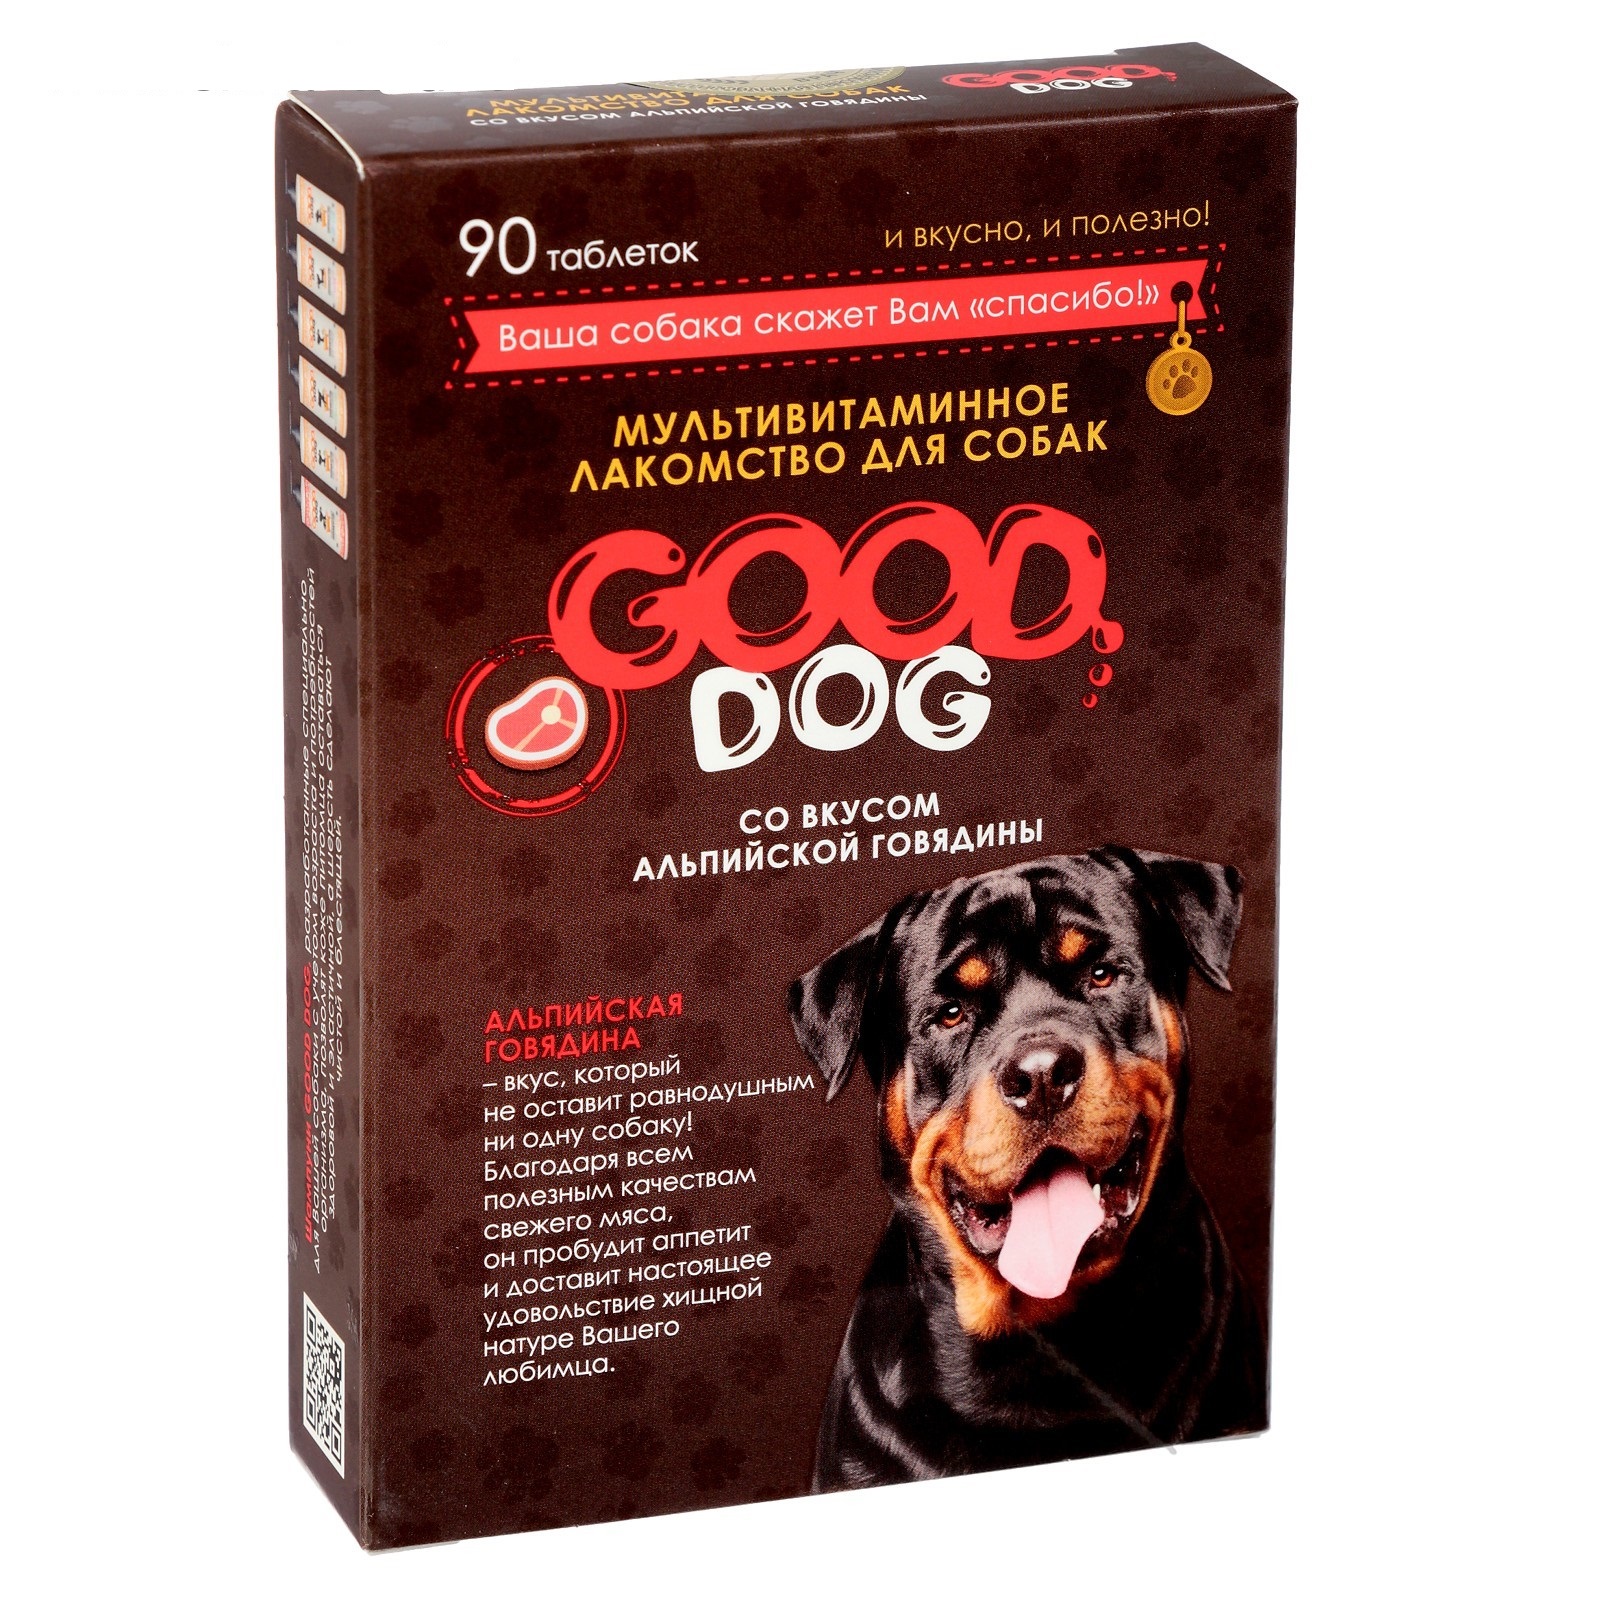 Гуд Дог 90т - Альпийская Говядина - лакомство для Собак (Good Dog)